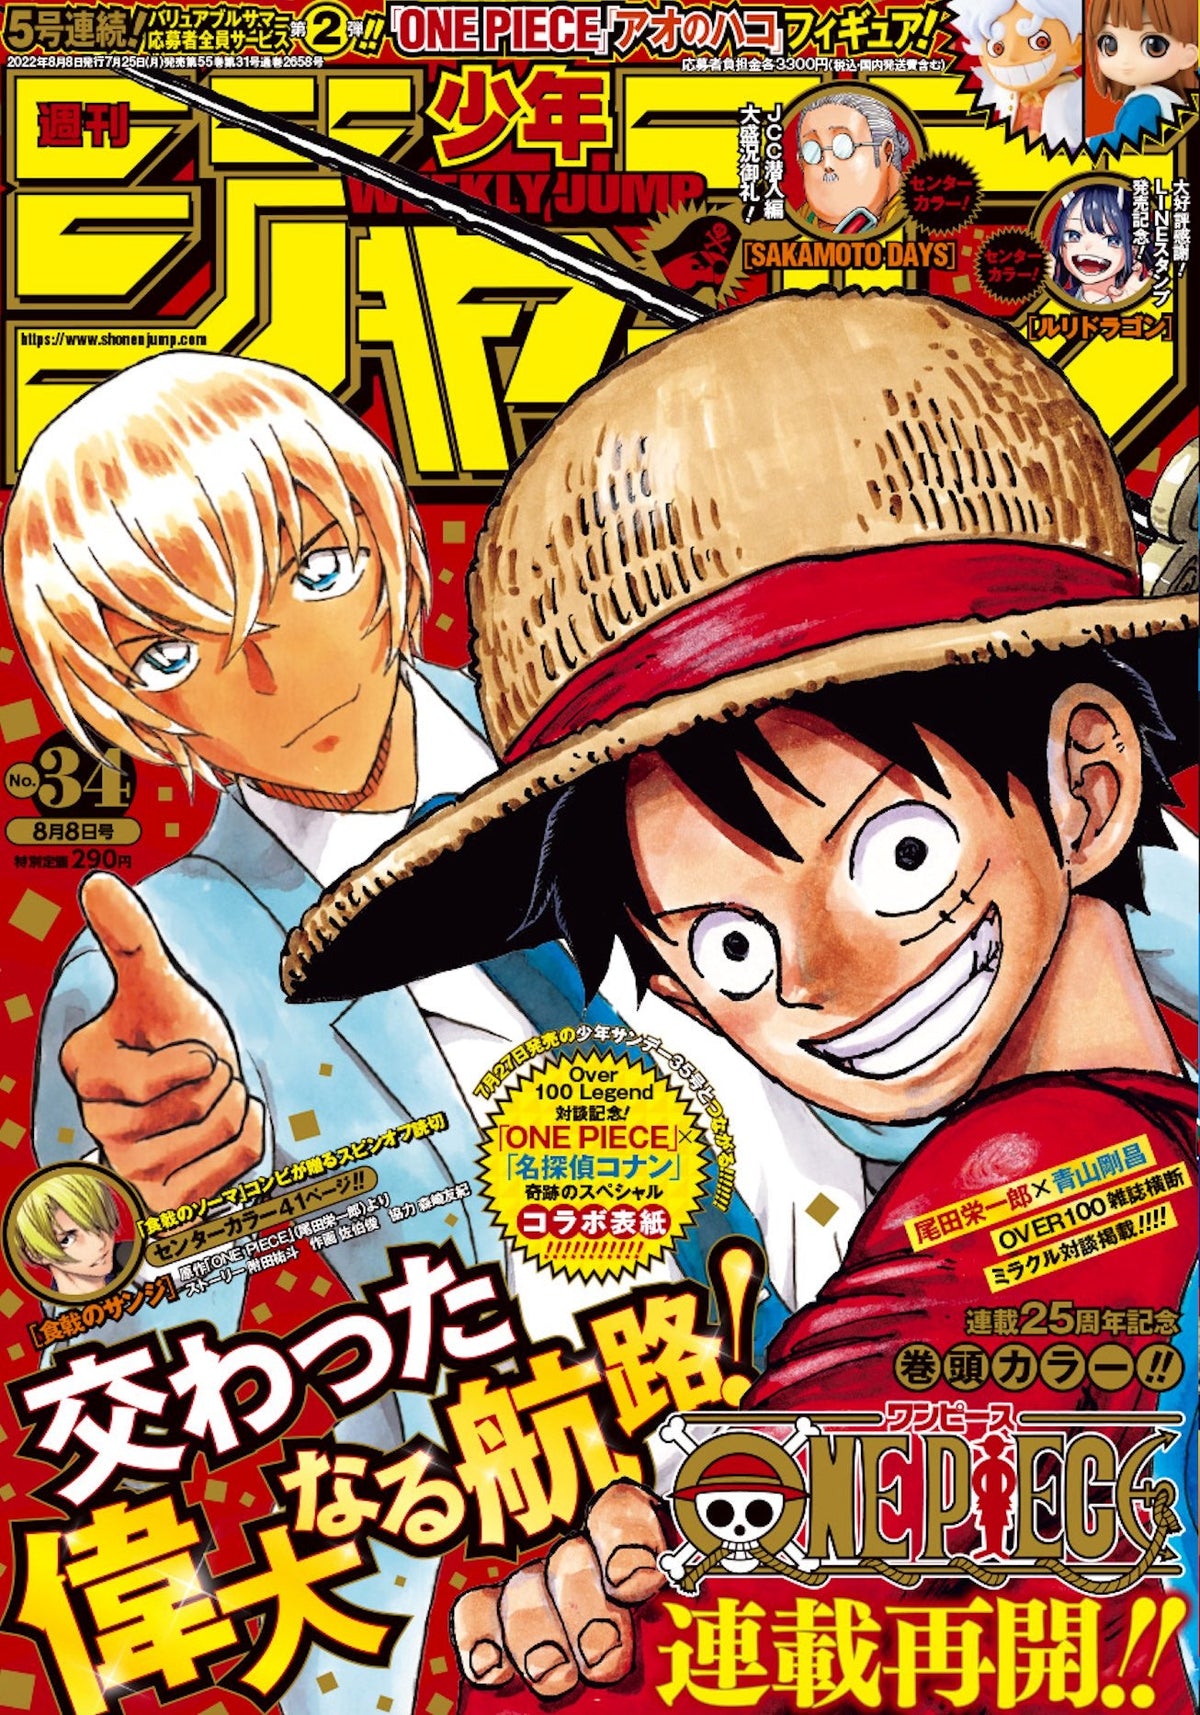 Sebo do Messias Gibi - One Piece - Shonen Jump Graphic Novel - Volume 10 (em  inglês)